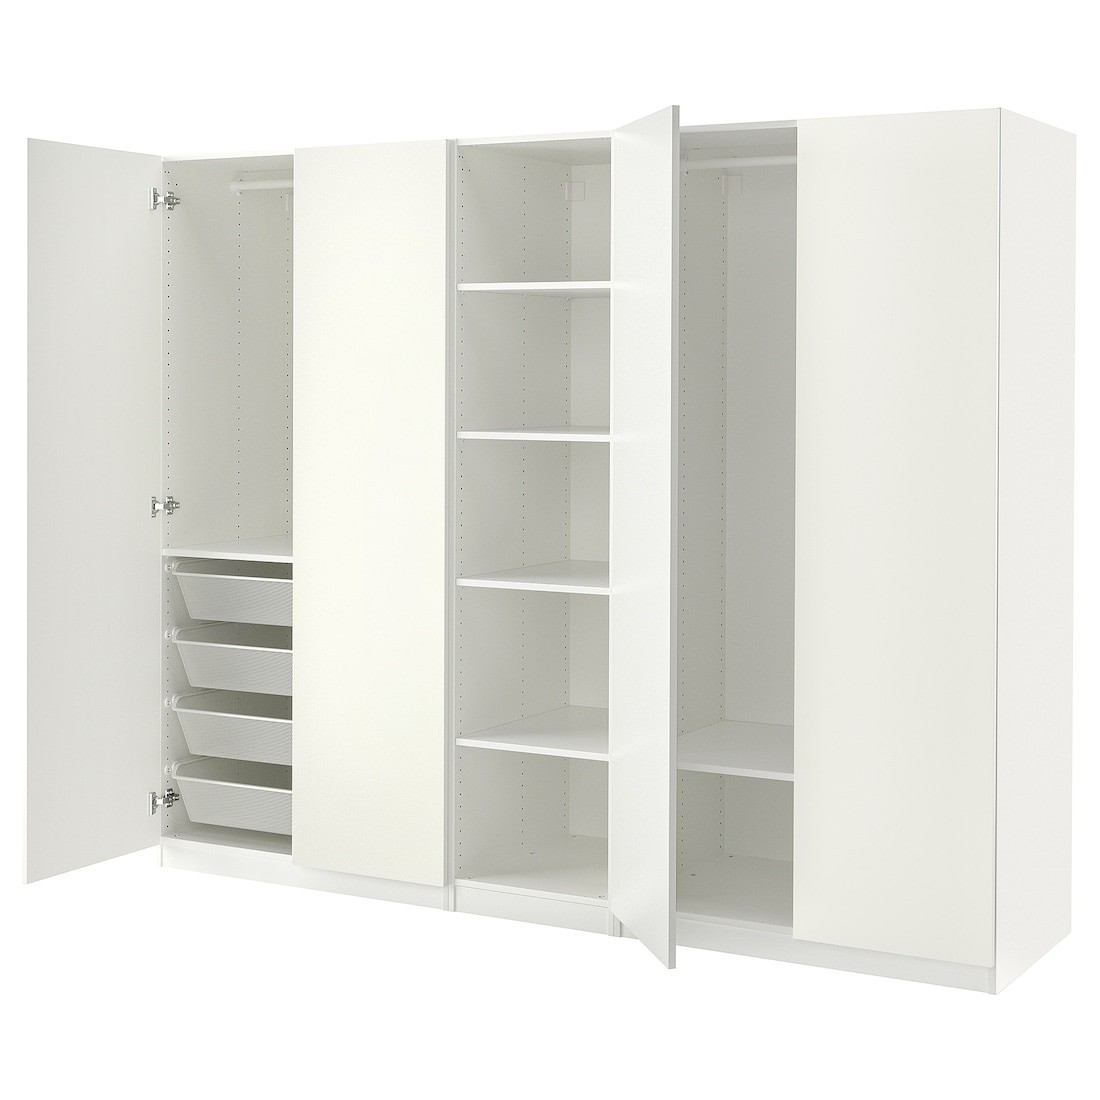 IKEA PAX ПАКС / FORSAND ФОРСАНД Шкаф, белый / белый, 250x60x201 cм 29478082 294.780.82